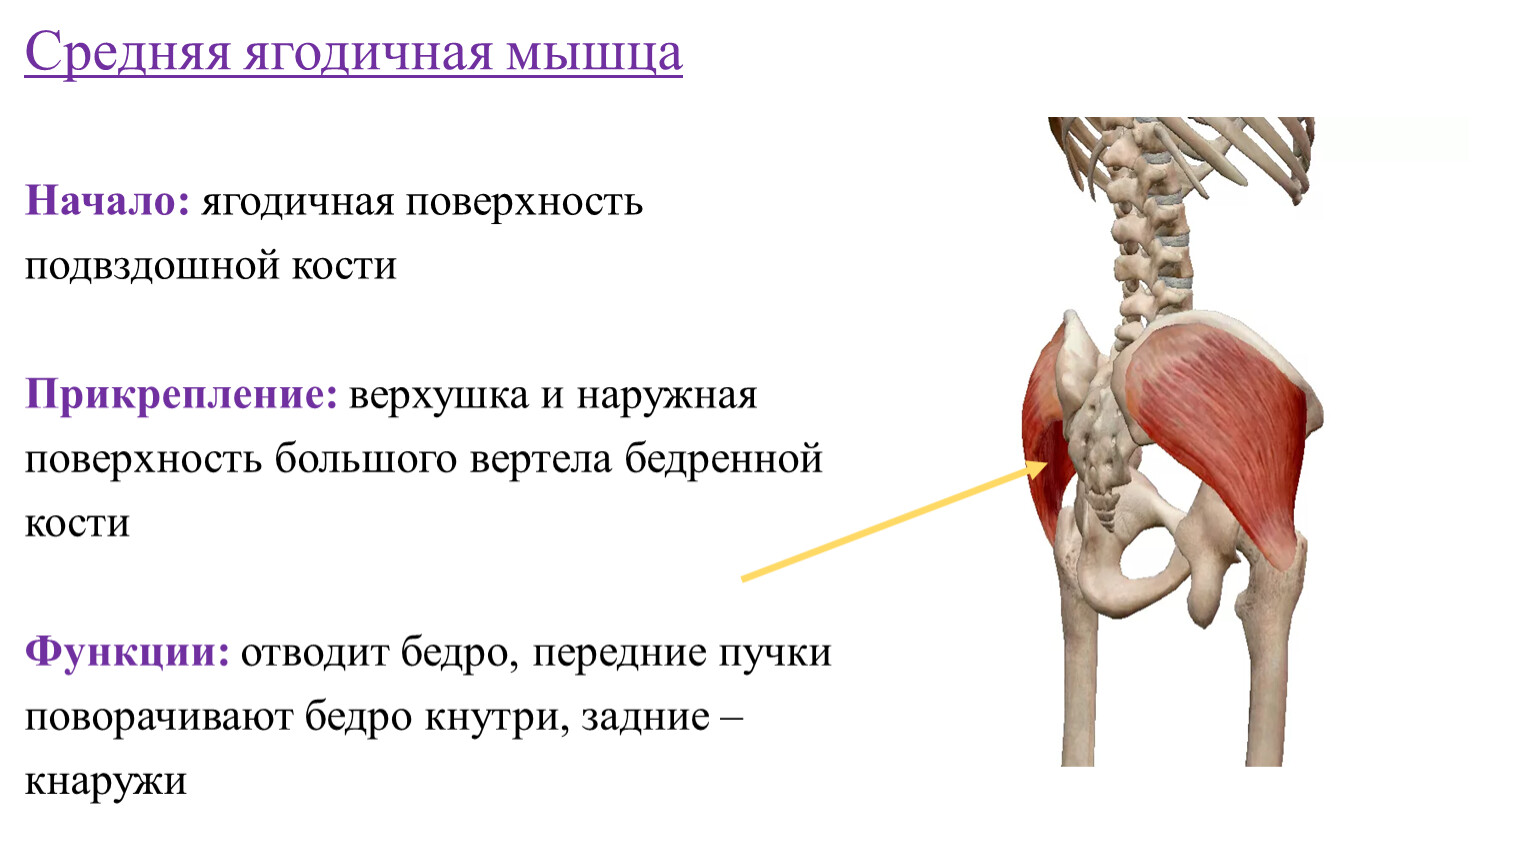 Подвздошная кость болит. Средняя ягодичная мышца функции. Средняя ягодичная мышца начало прикрепление функции. Большая ягодичная мышца начало и прикрепление функция.